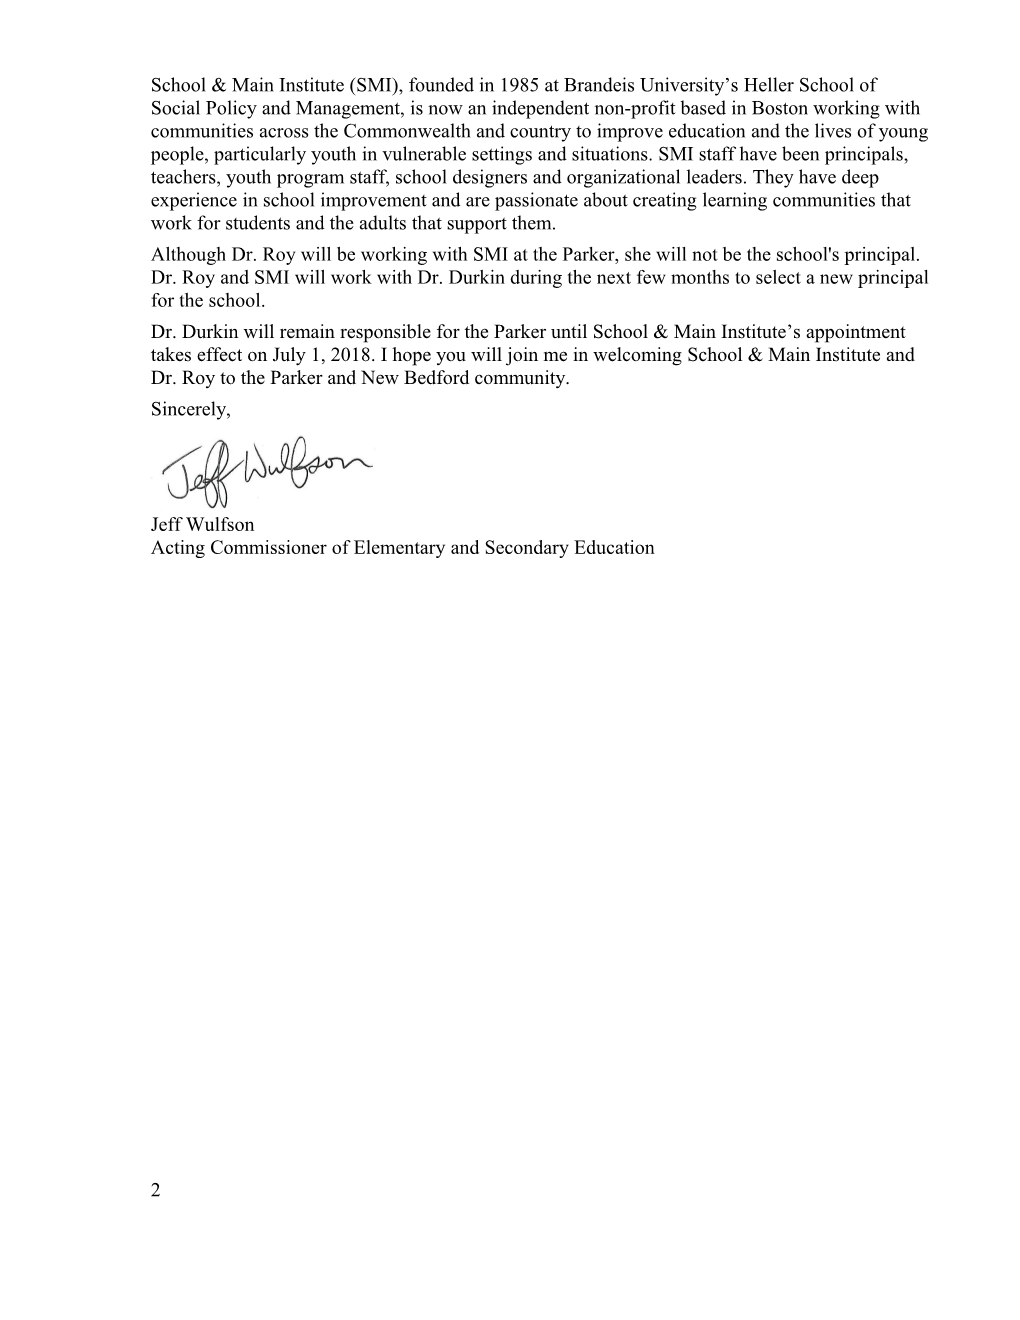 Parker School's Receiver Announcement Letter